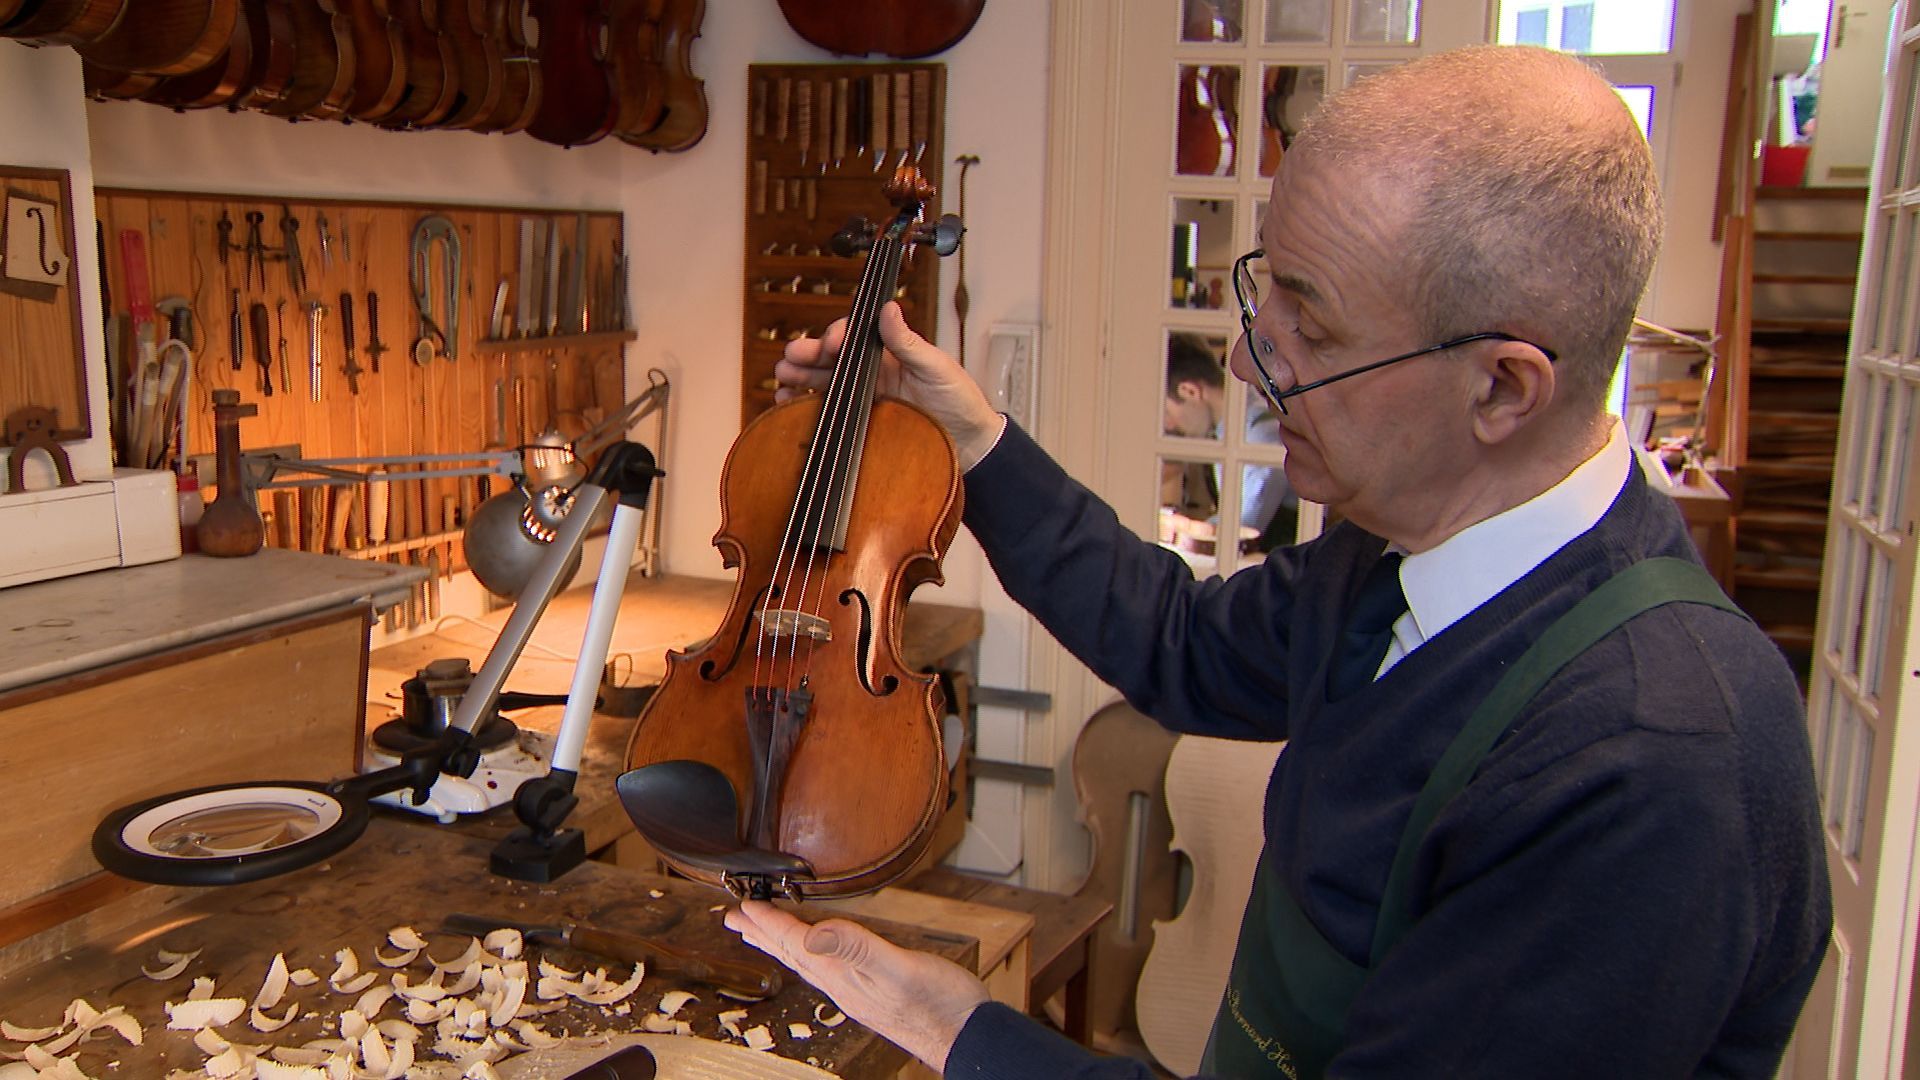 Jan Strick cultive l’excellence d’un savoir-faire aussi ancien que les instruments à cordes : la lutherie